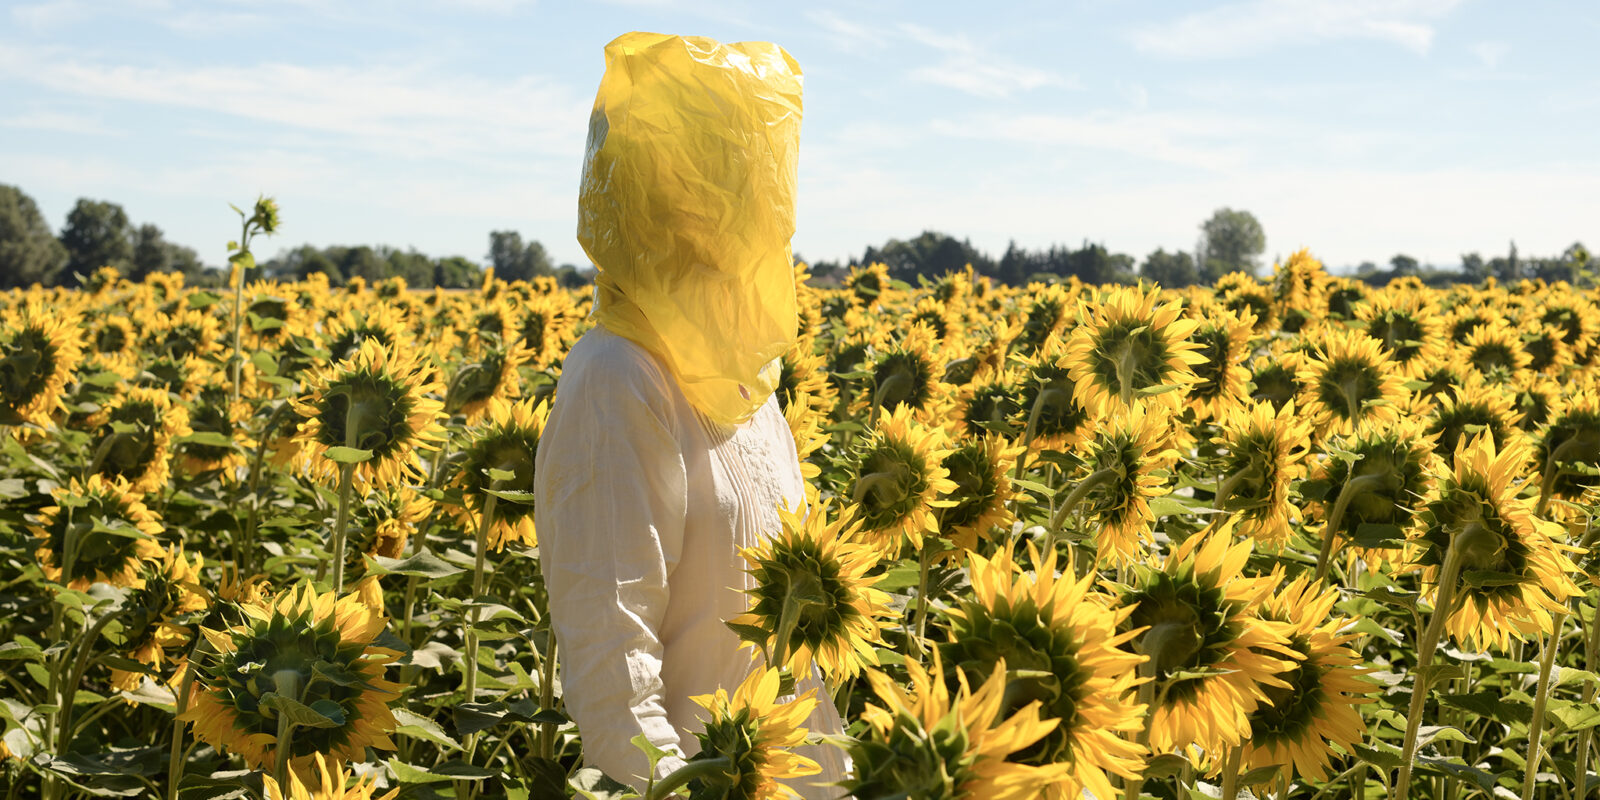 En person står mitt i ett jättelikt solrosfält. Personen har en gul platspåse på huvudet.